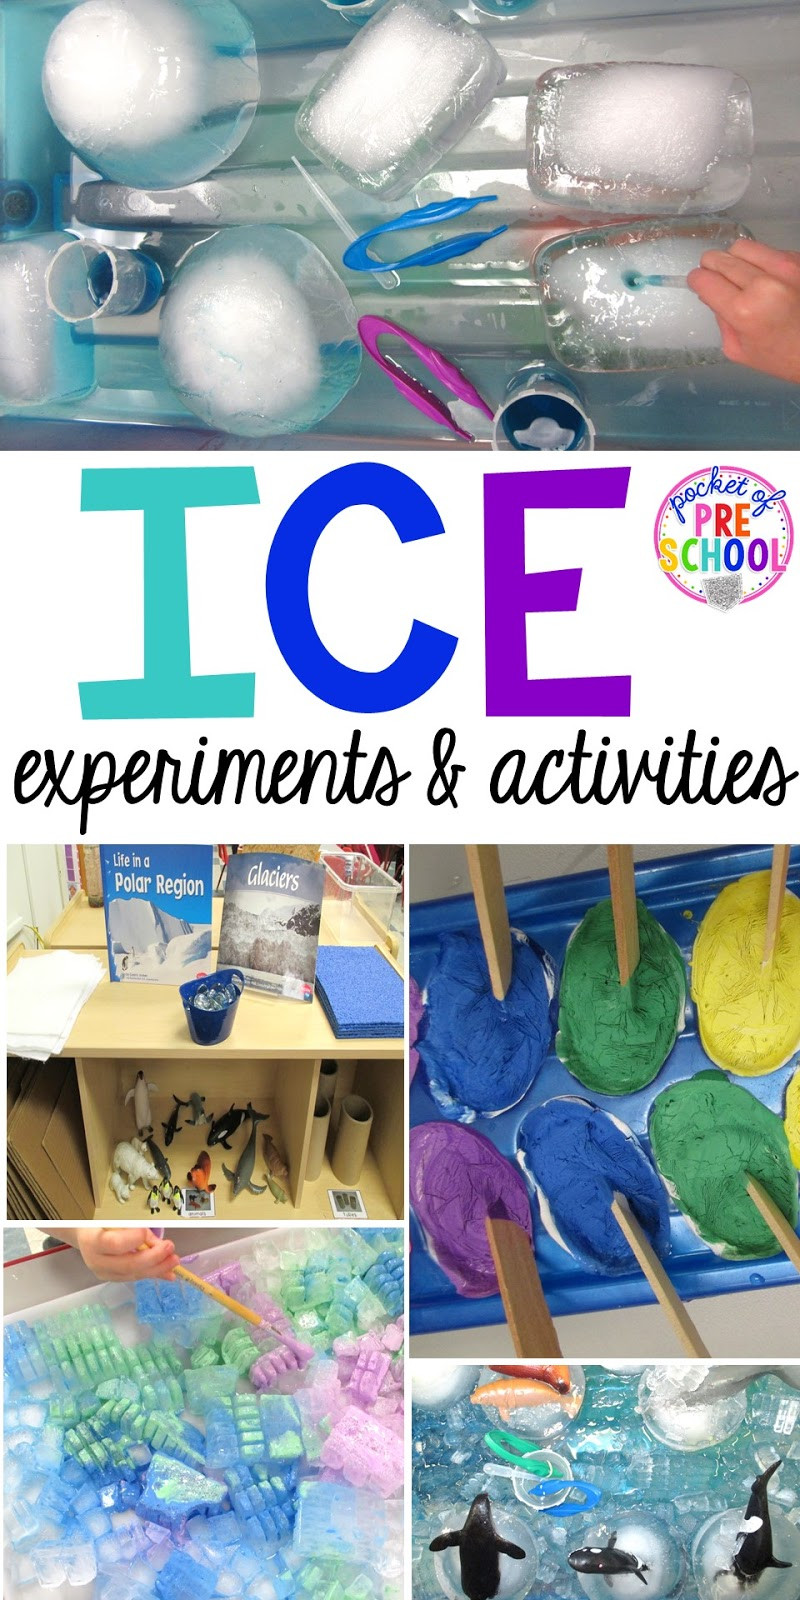 Winter Themed Activities For Preschoolers
 Arctic Ice Activities and Experiments Pocket of Preschool